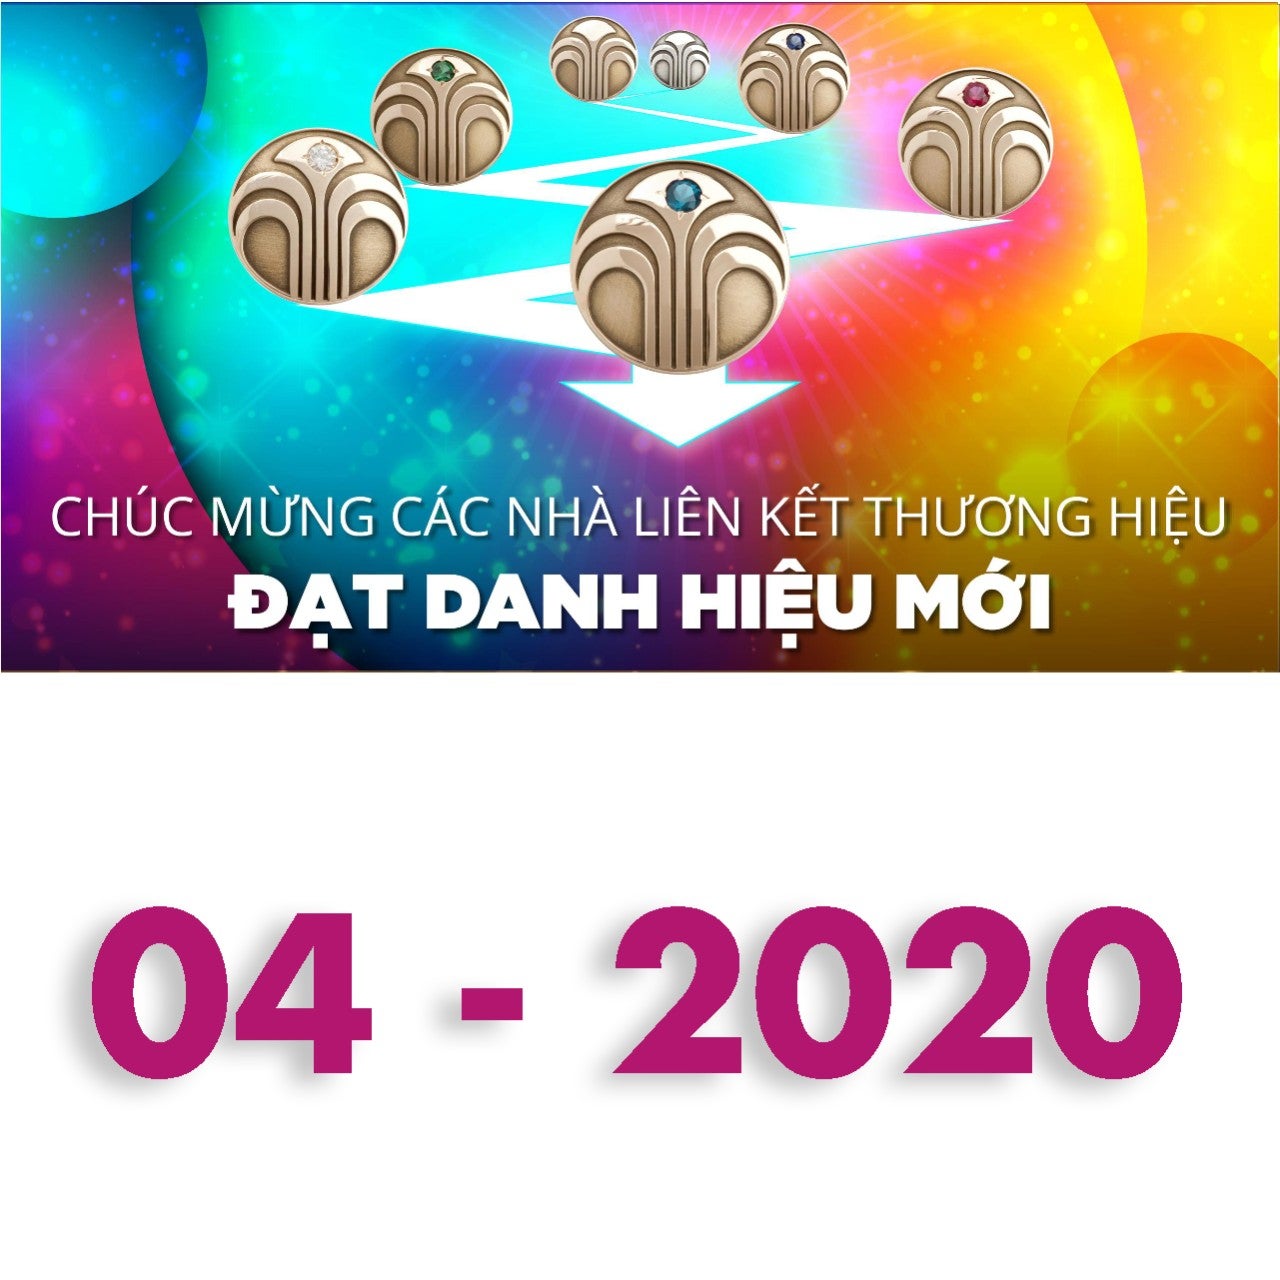 2020-04